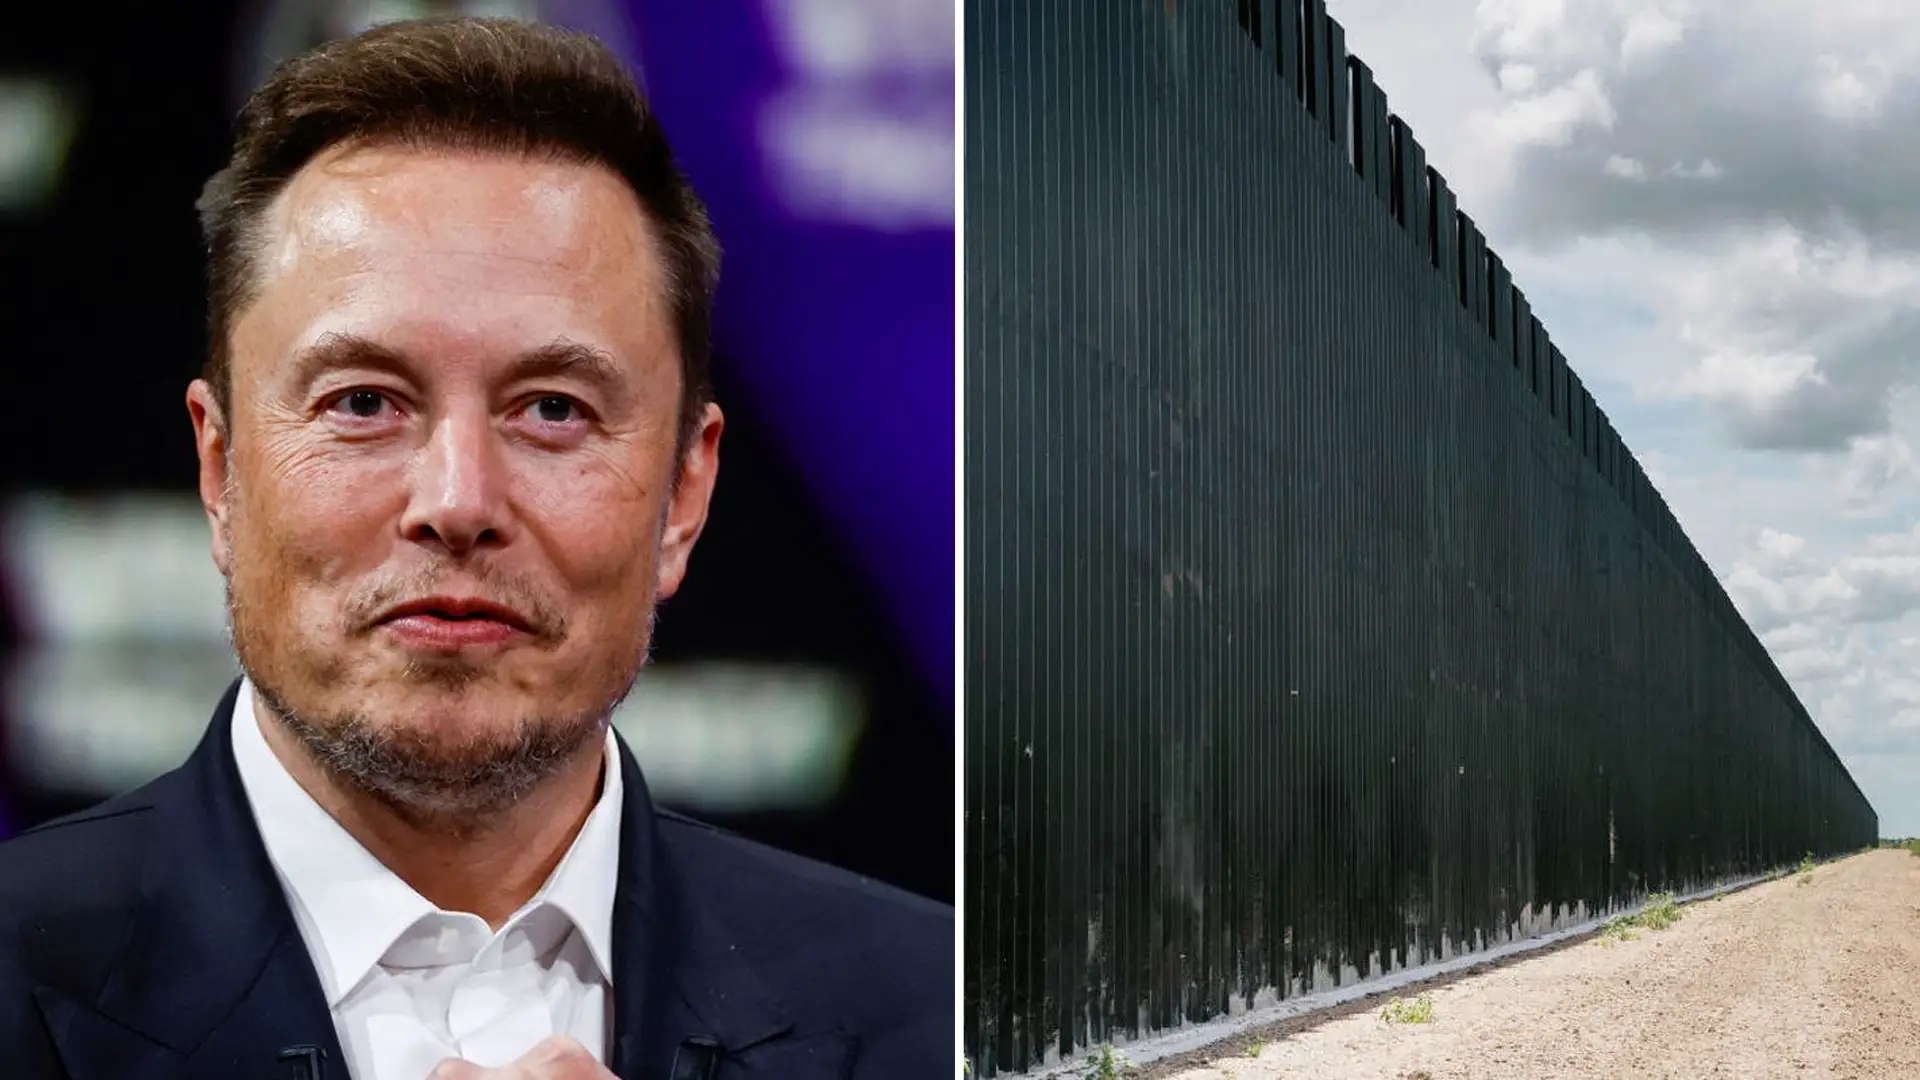 Elon Musk Texas Wall Construct